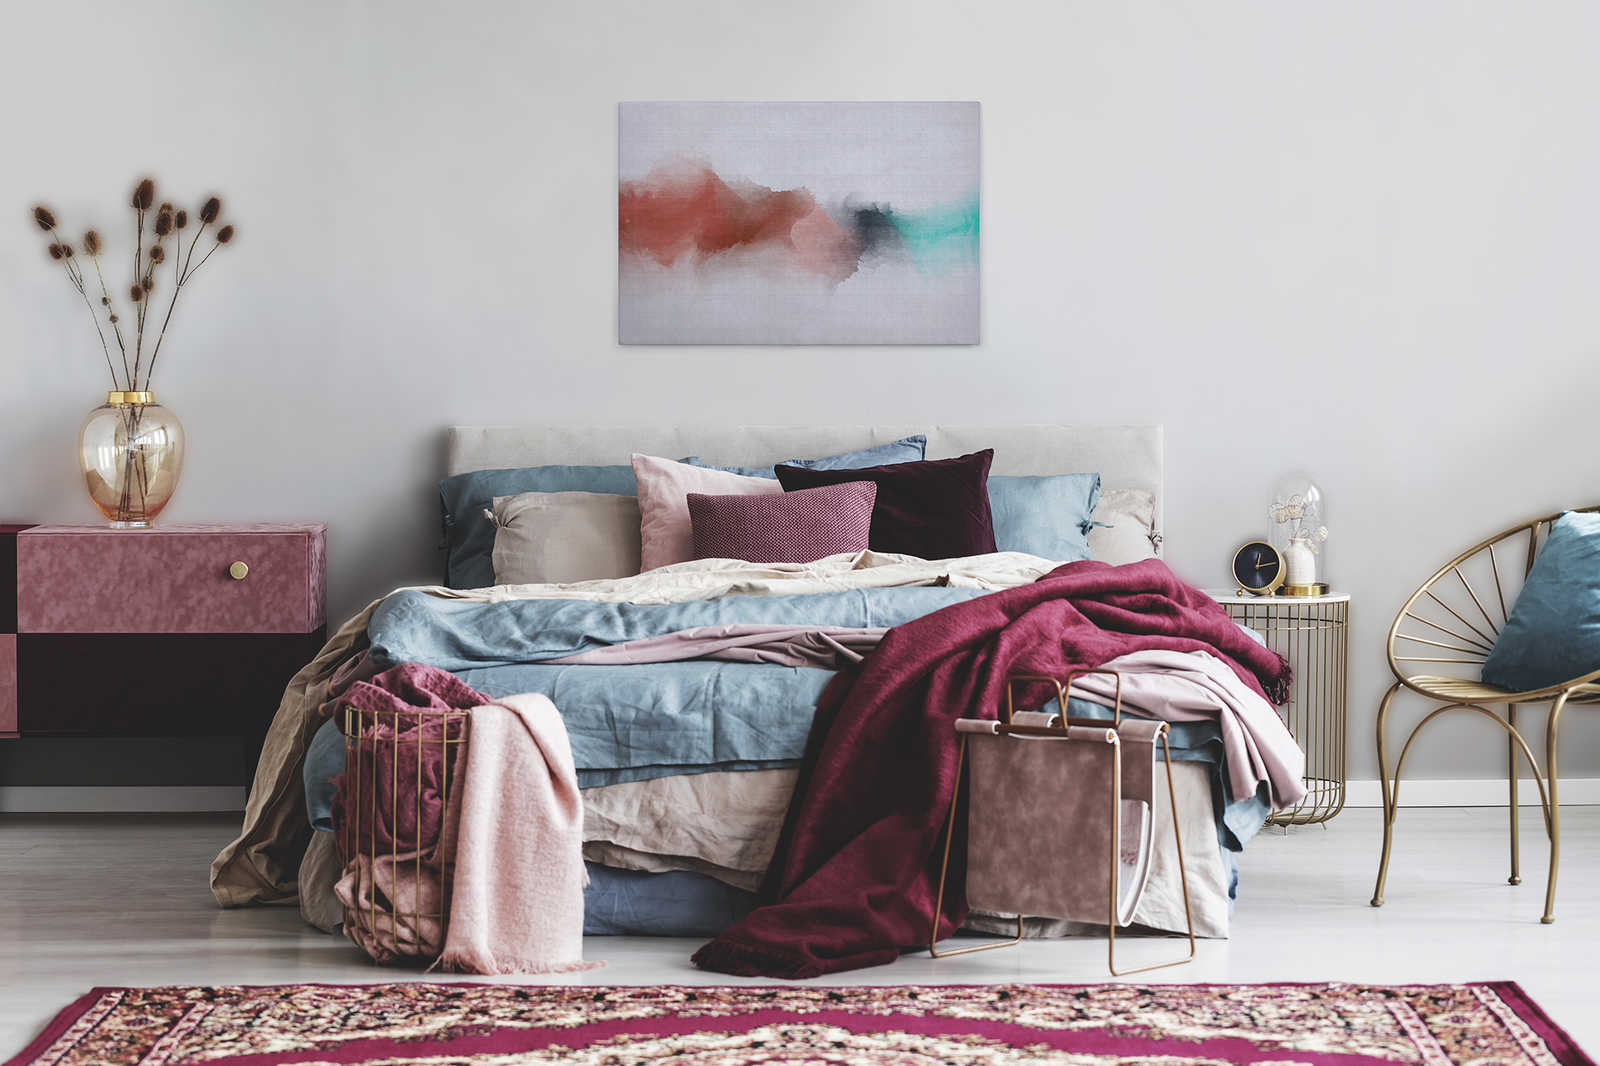             Sogno ad occhi aperti 2 - Tela con struttura in lino naturale e macchie di colore in stile acquerello - 0,90 m x 0,60 m
        